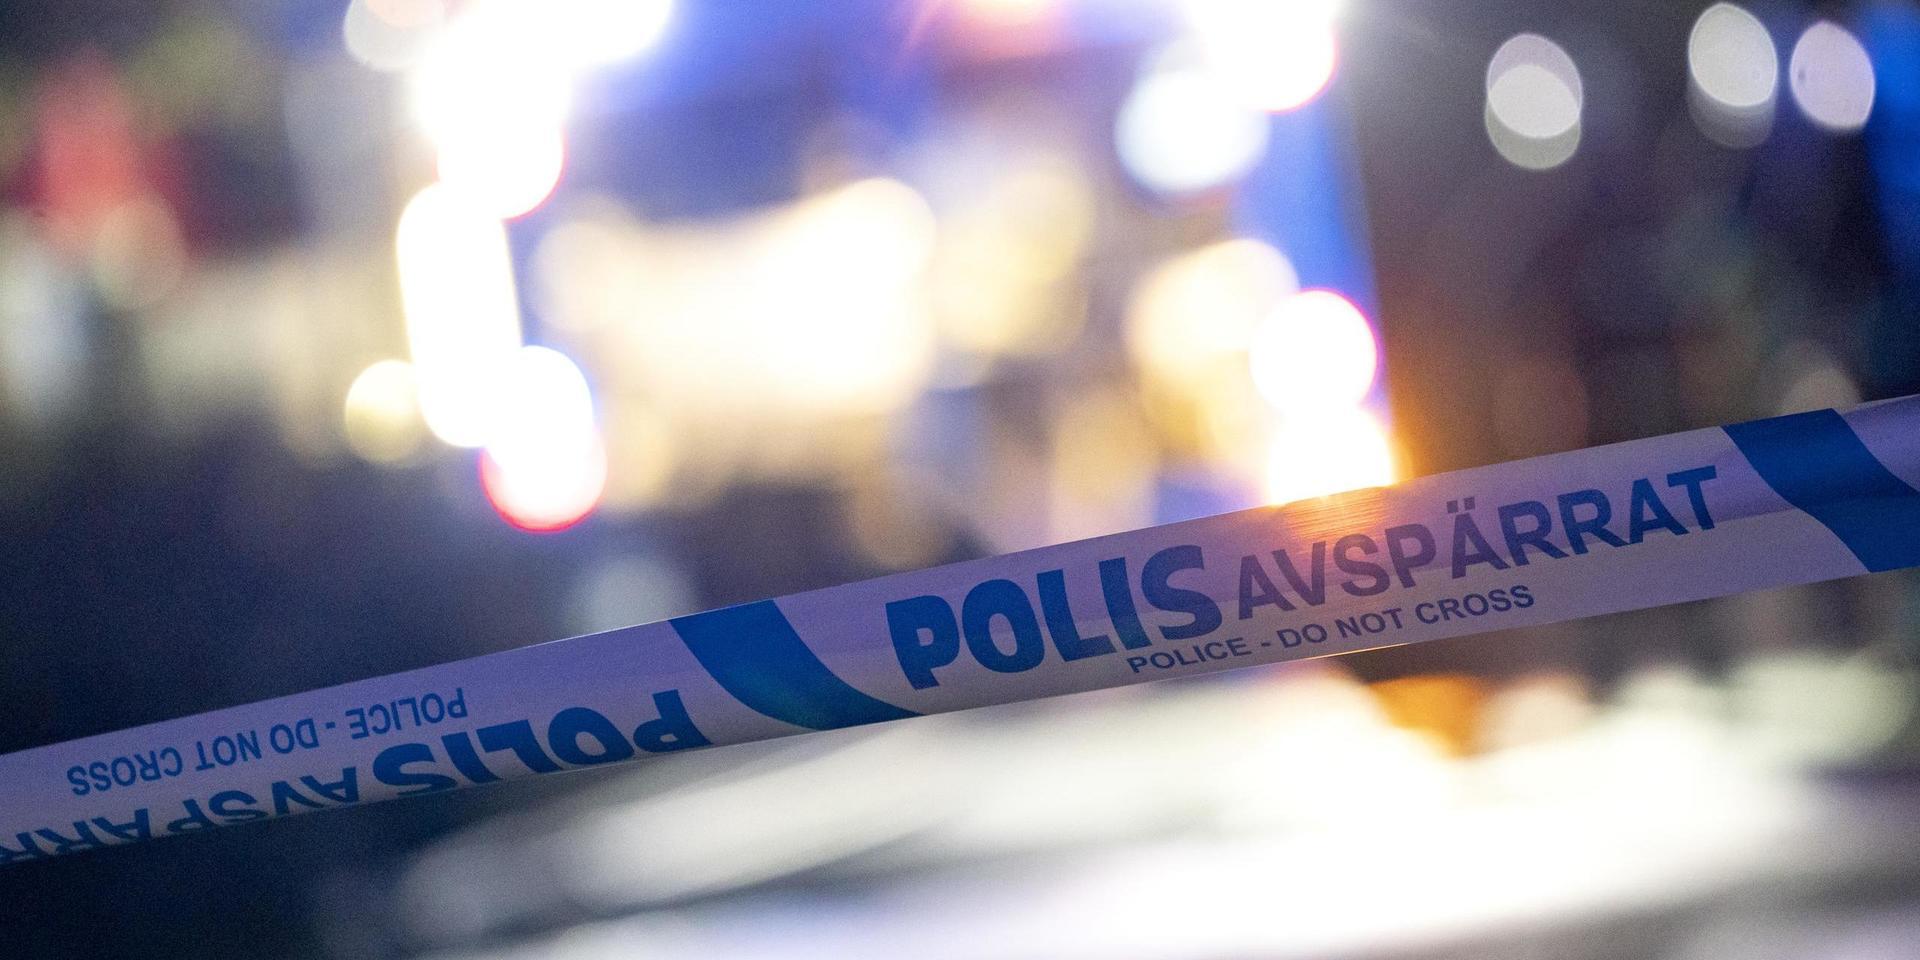 Fyra personer sitter anhållna efter en grov misshandel i nordöstra Göteborg på lördagskvällen.